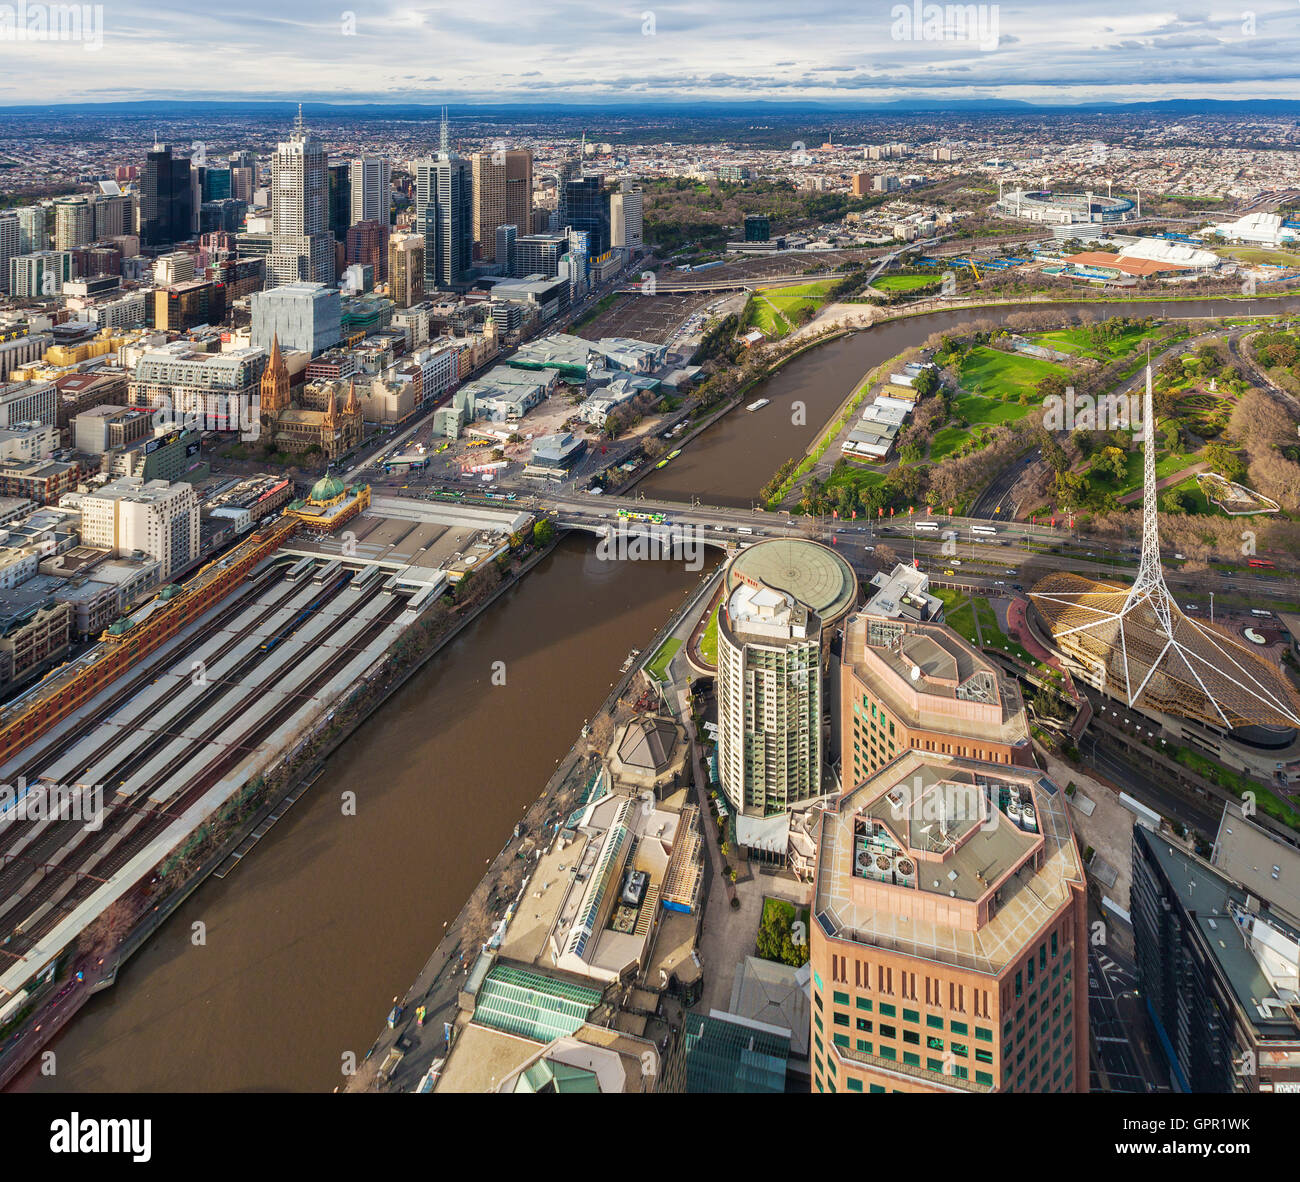 Melbourne, Australie - le 27 août 2016 : Vue aérienne de Melboure CDB avec la gare de Flinders Street, de la rivière Yarra, et Arts Centre. Banque D'Images